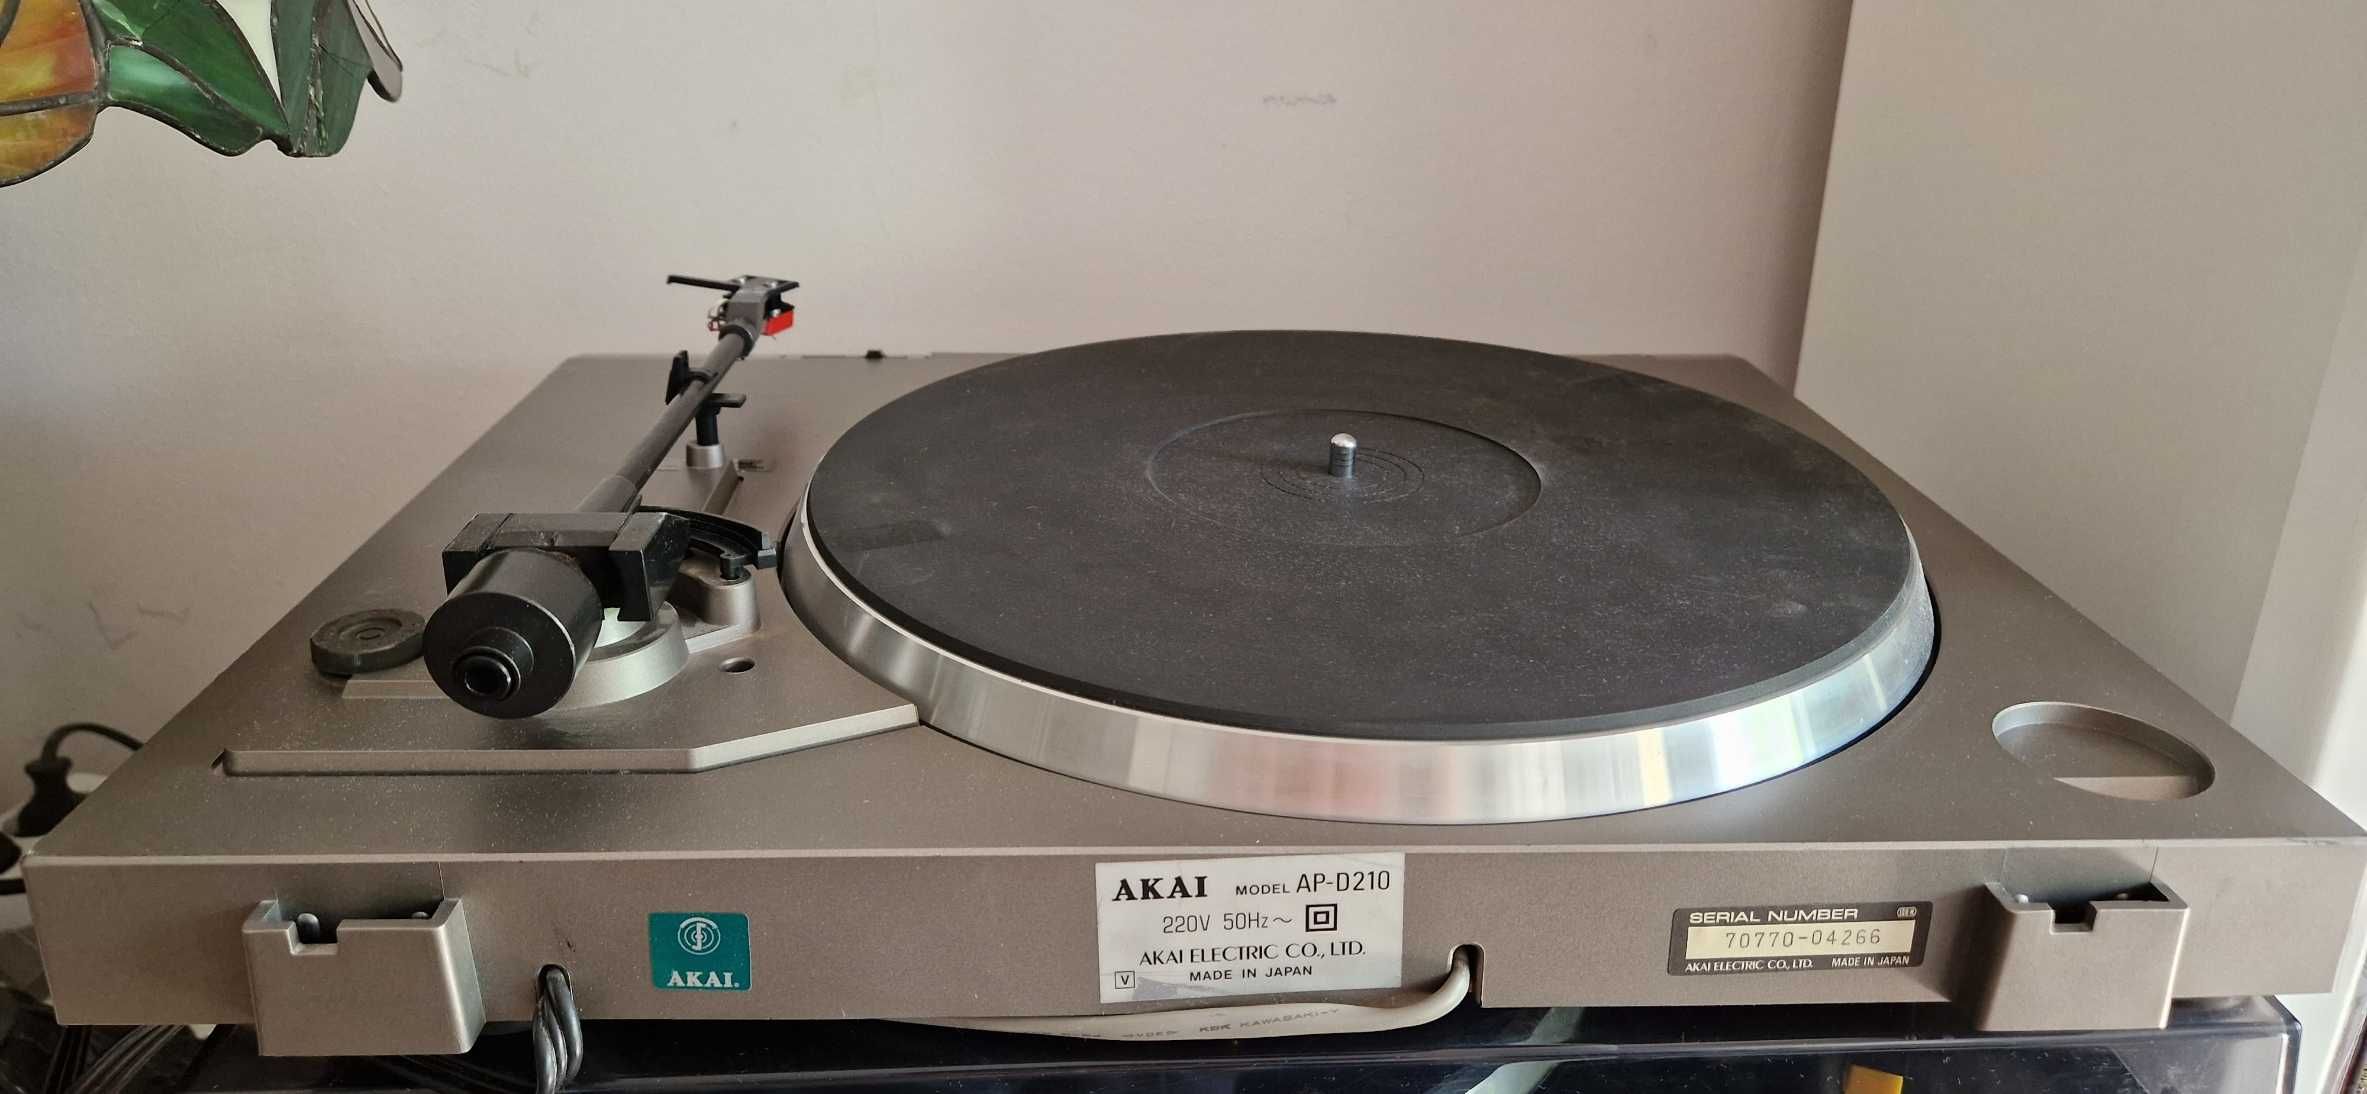 Gramofon AKAI AP-D210